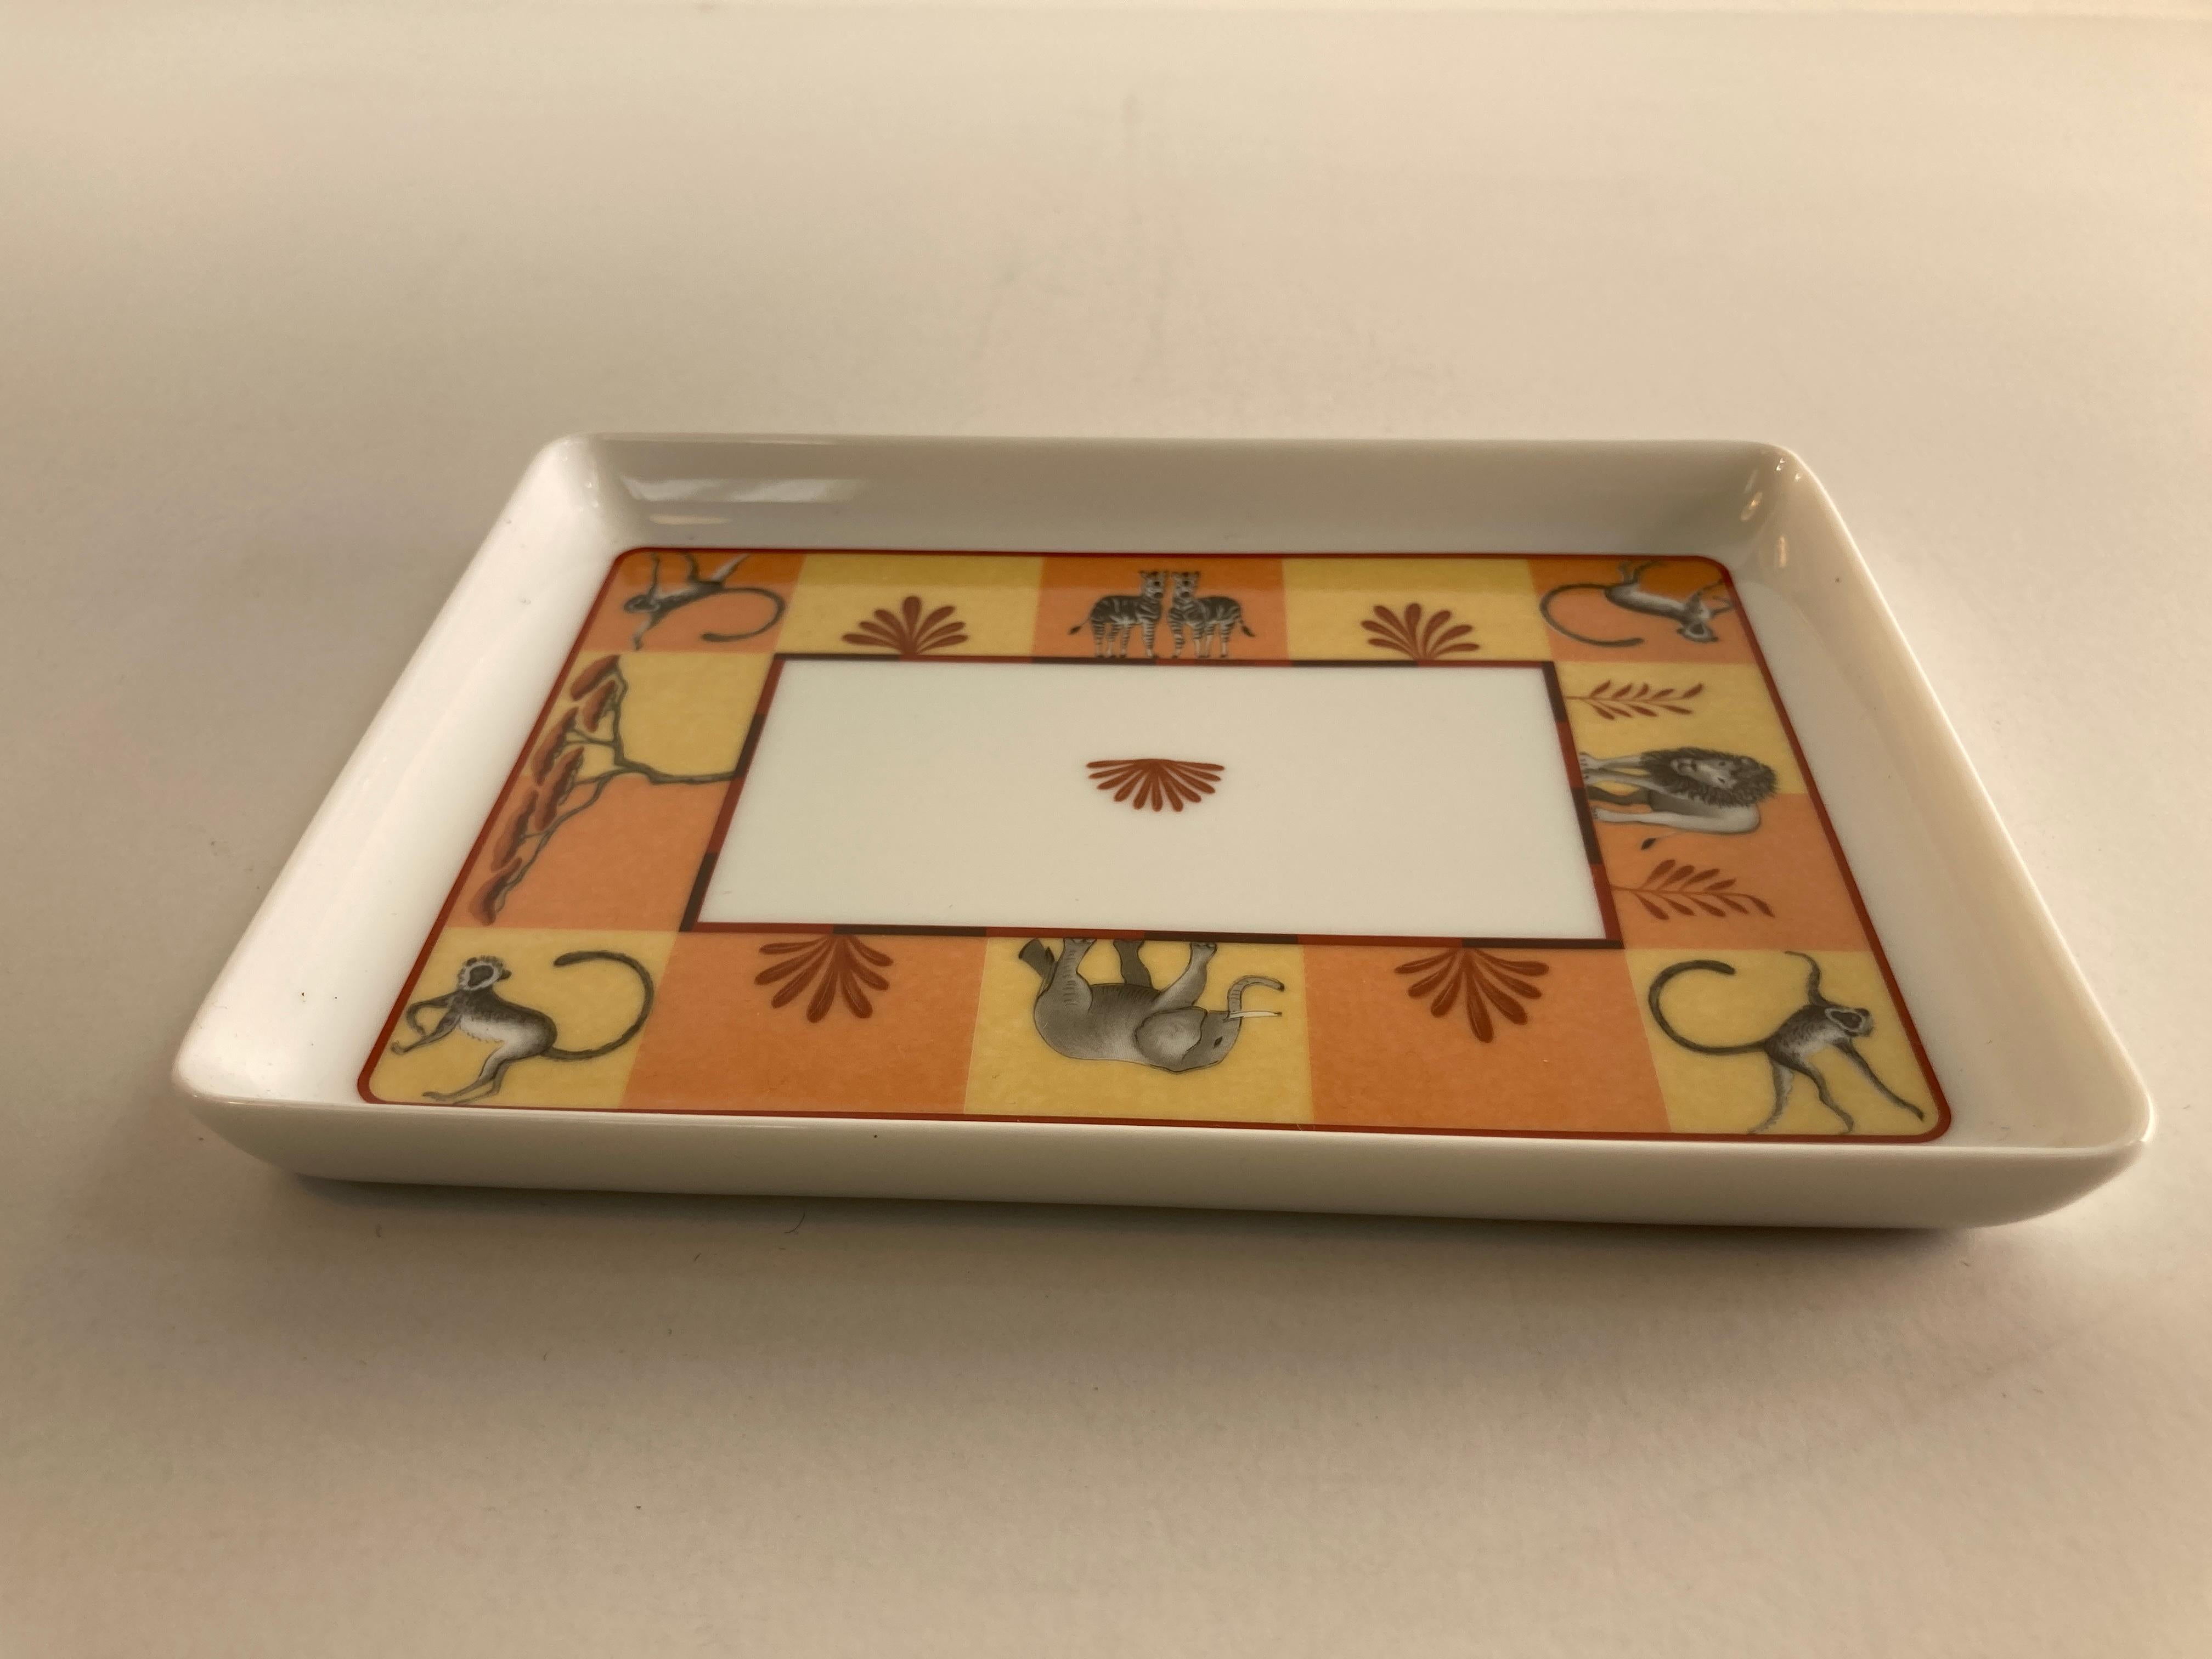 Hermes Porcelain Trinket Dish with Africa Orange Safari Design 9